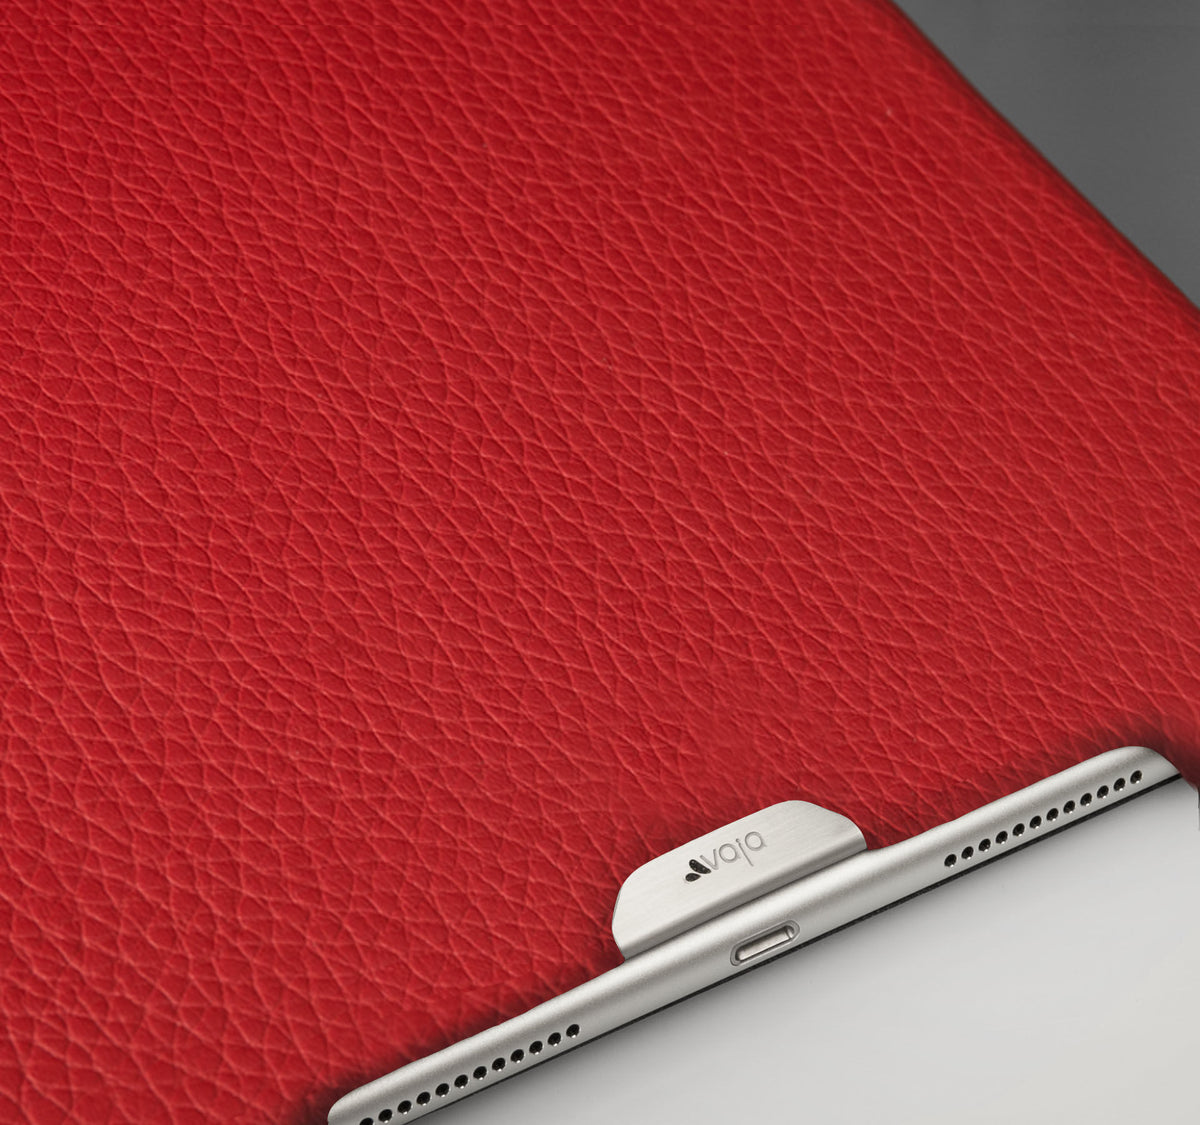 iPad Pro 9.7&#39;&#39; Leather Smart Grip - Vaja